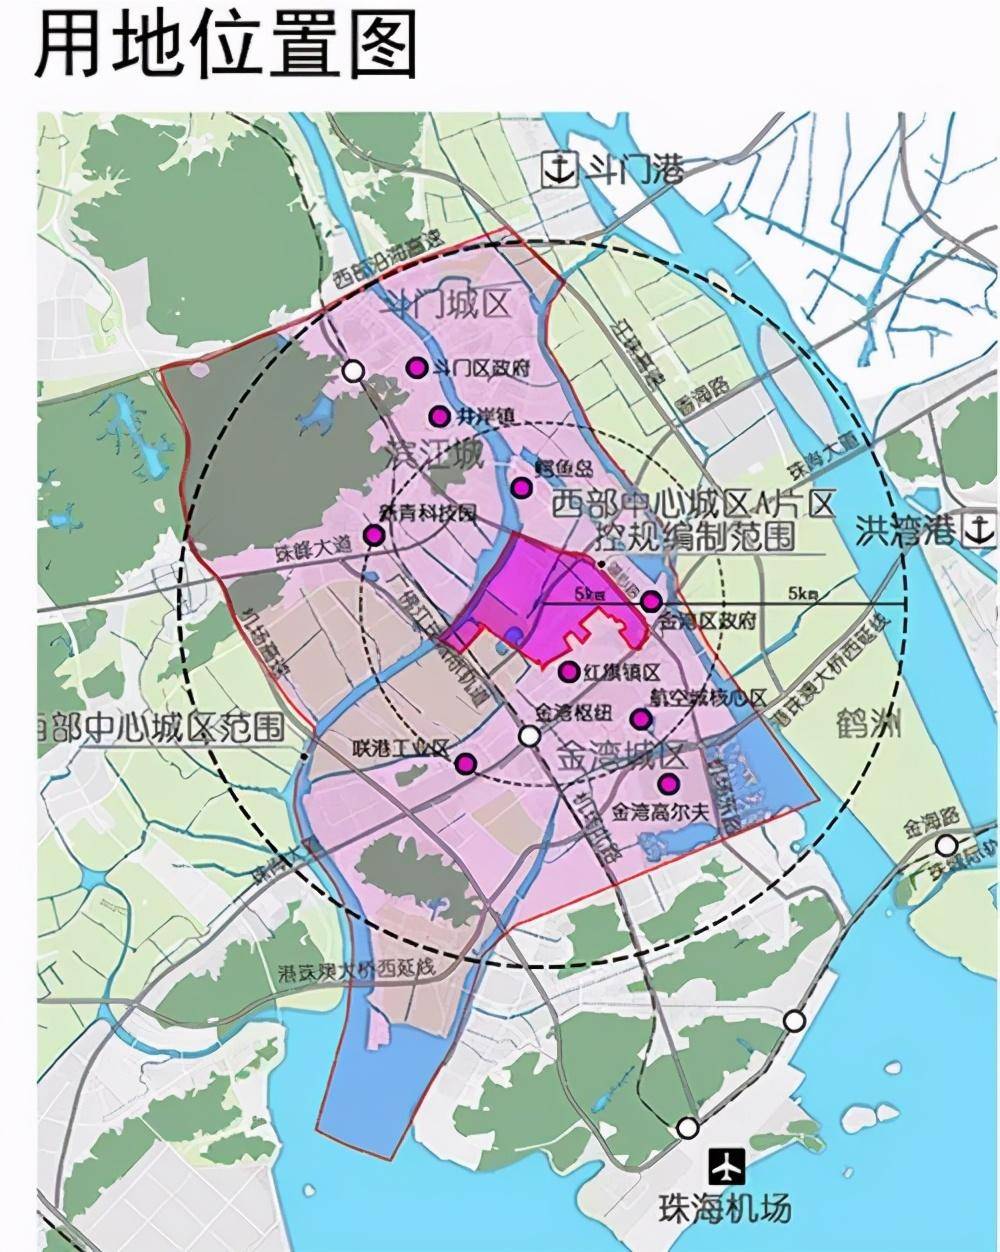 详述珠海四大新城的发展及现状(上)中居梦田湾区置业pro